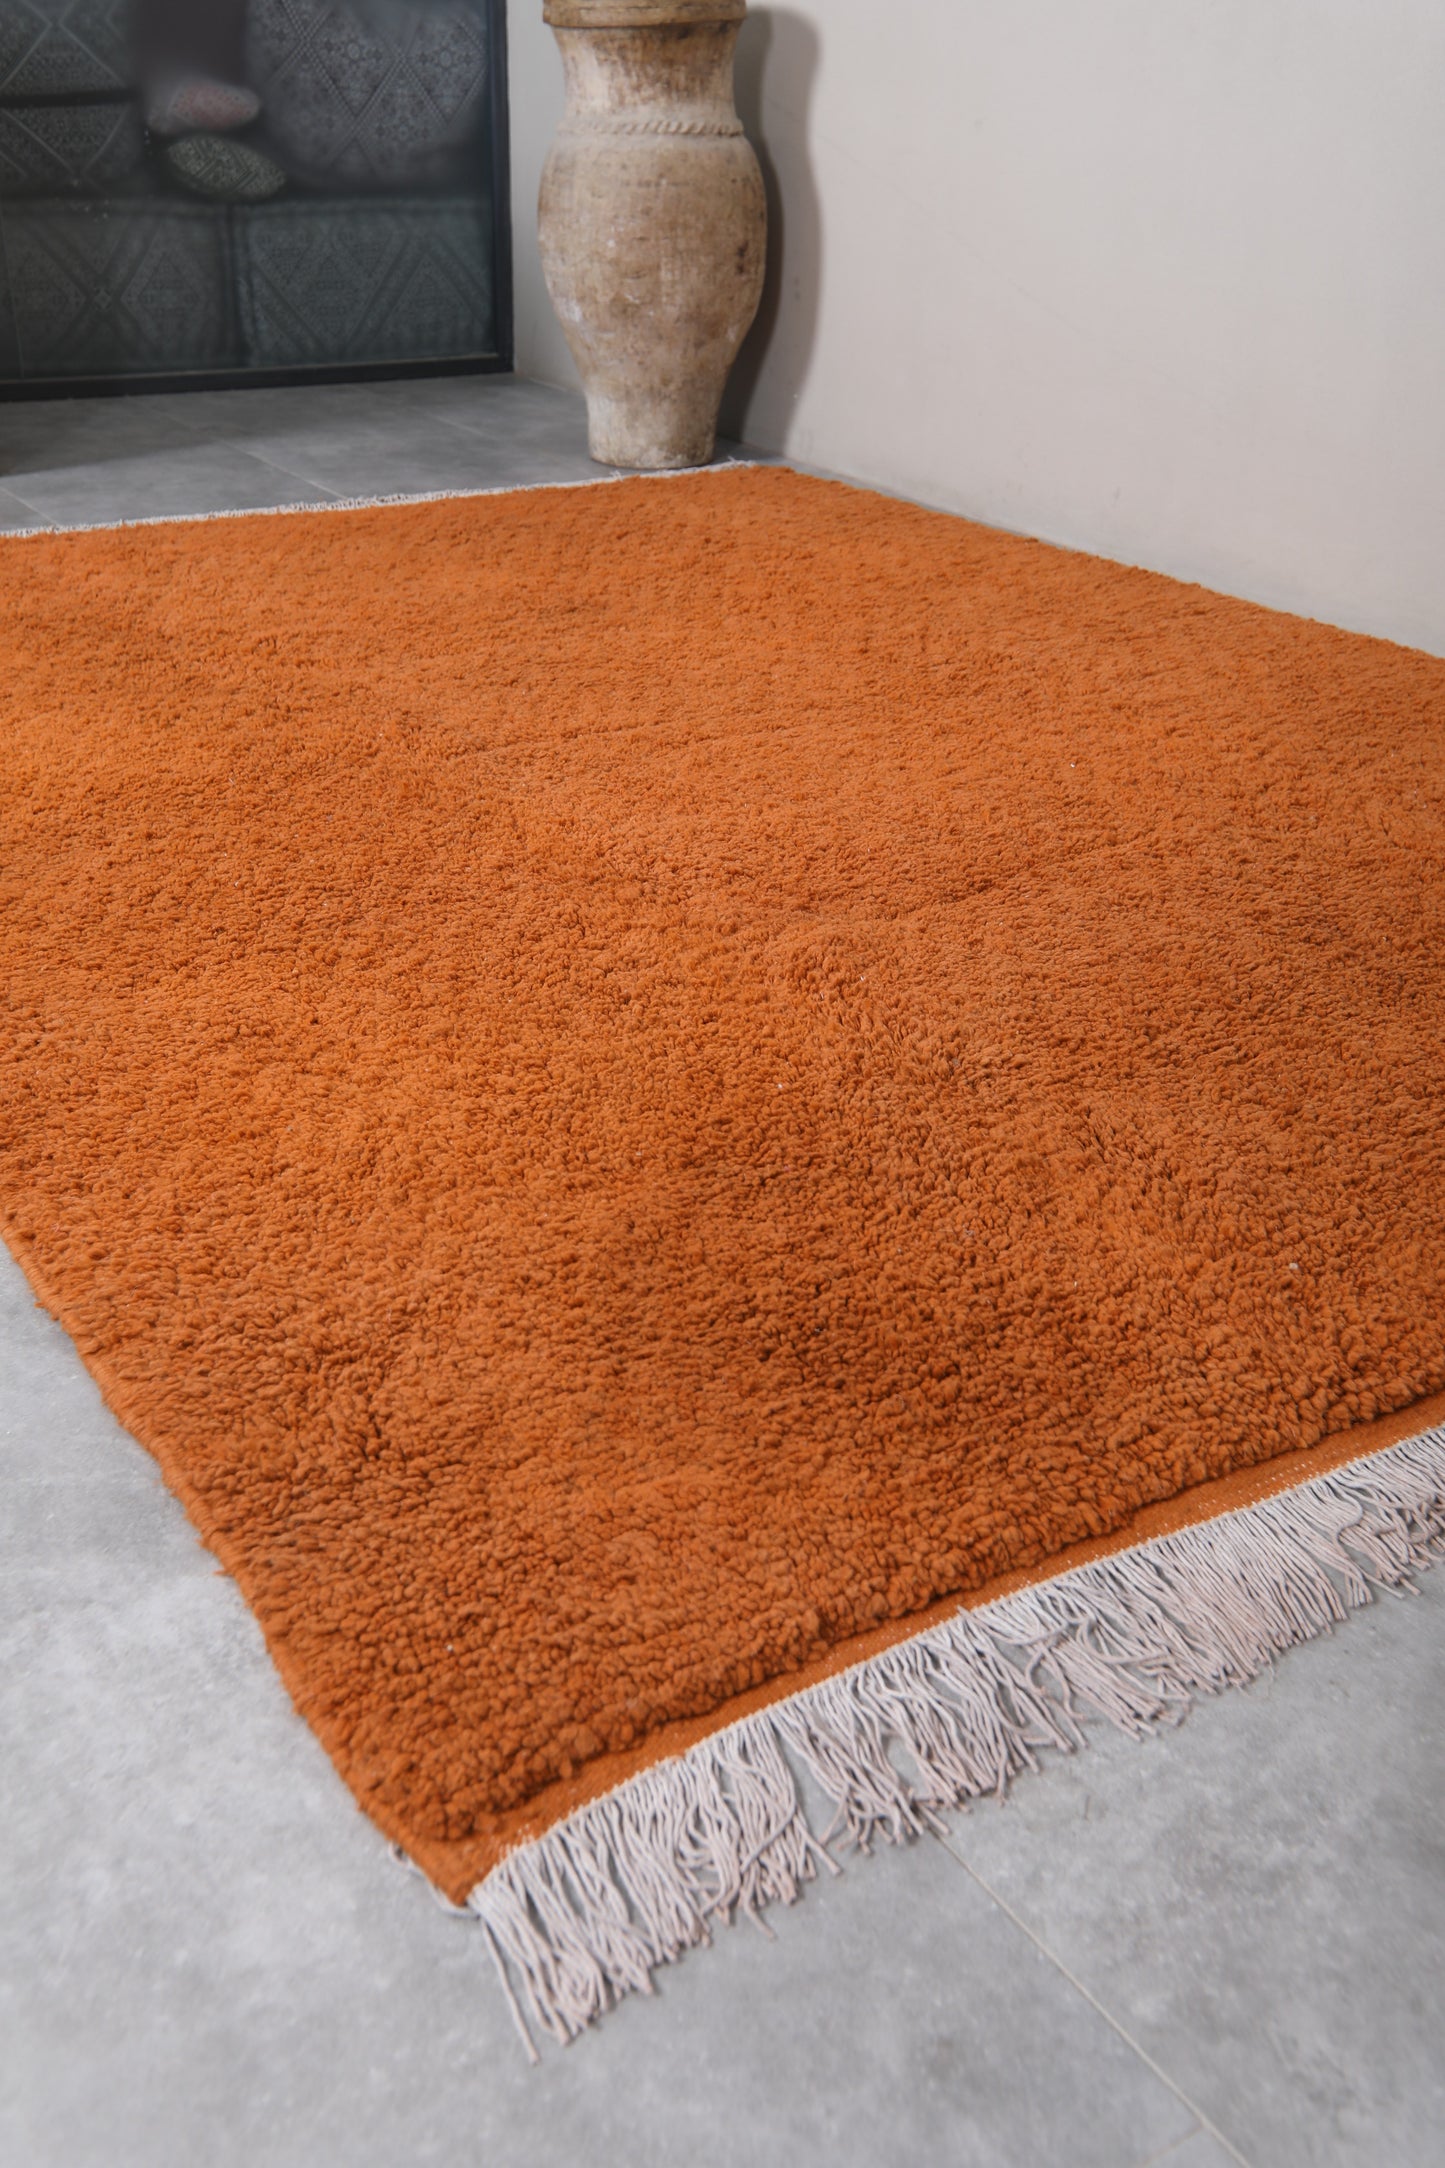 Moroccan rug 8.2 X 10.5 Feet